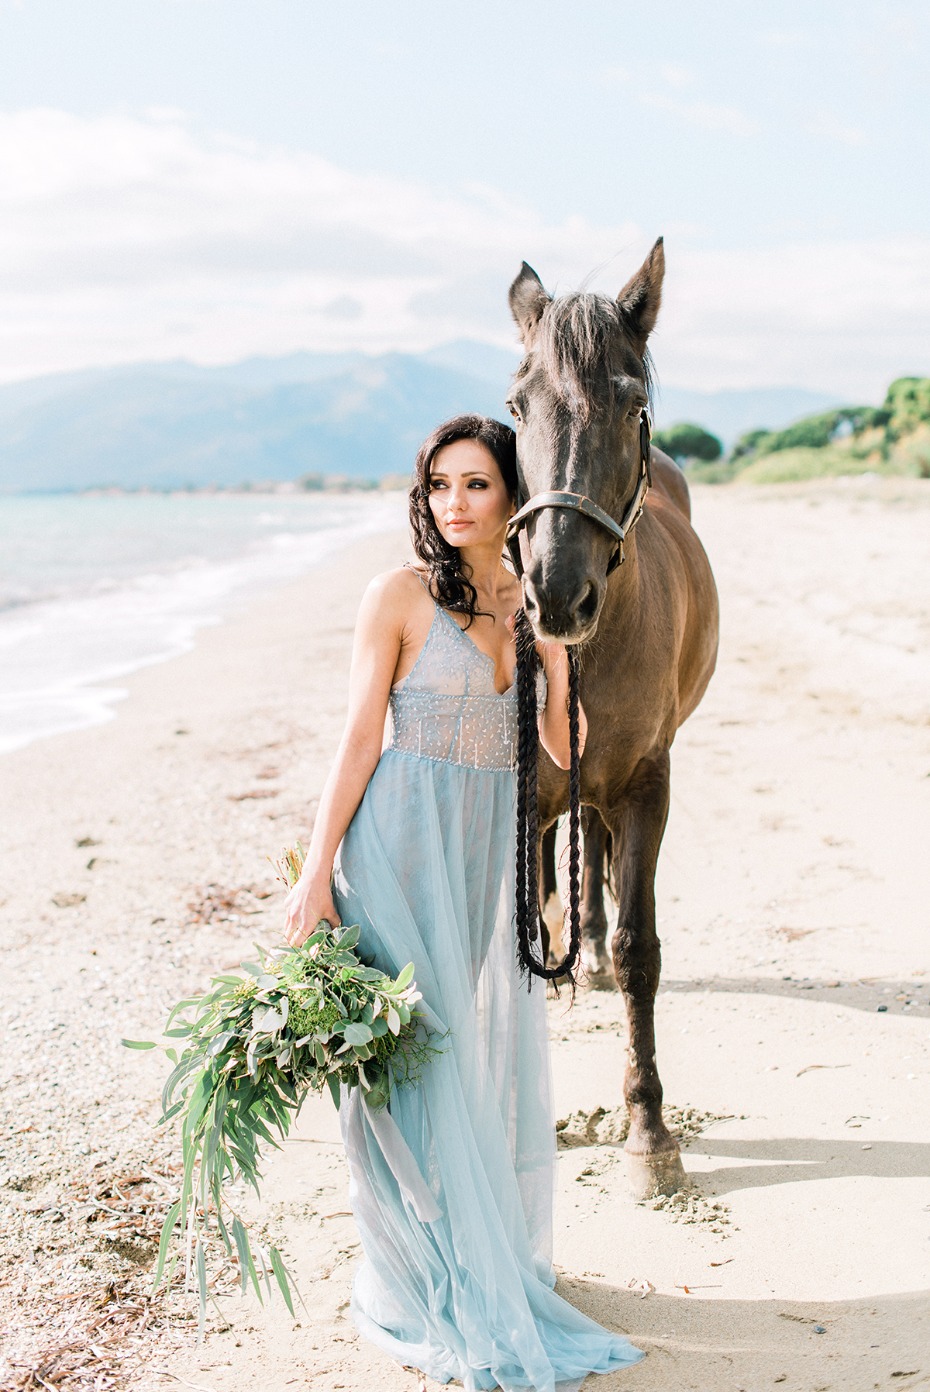 wedding photo ideas with a horse on a beach